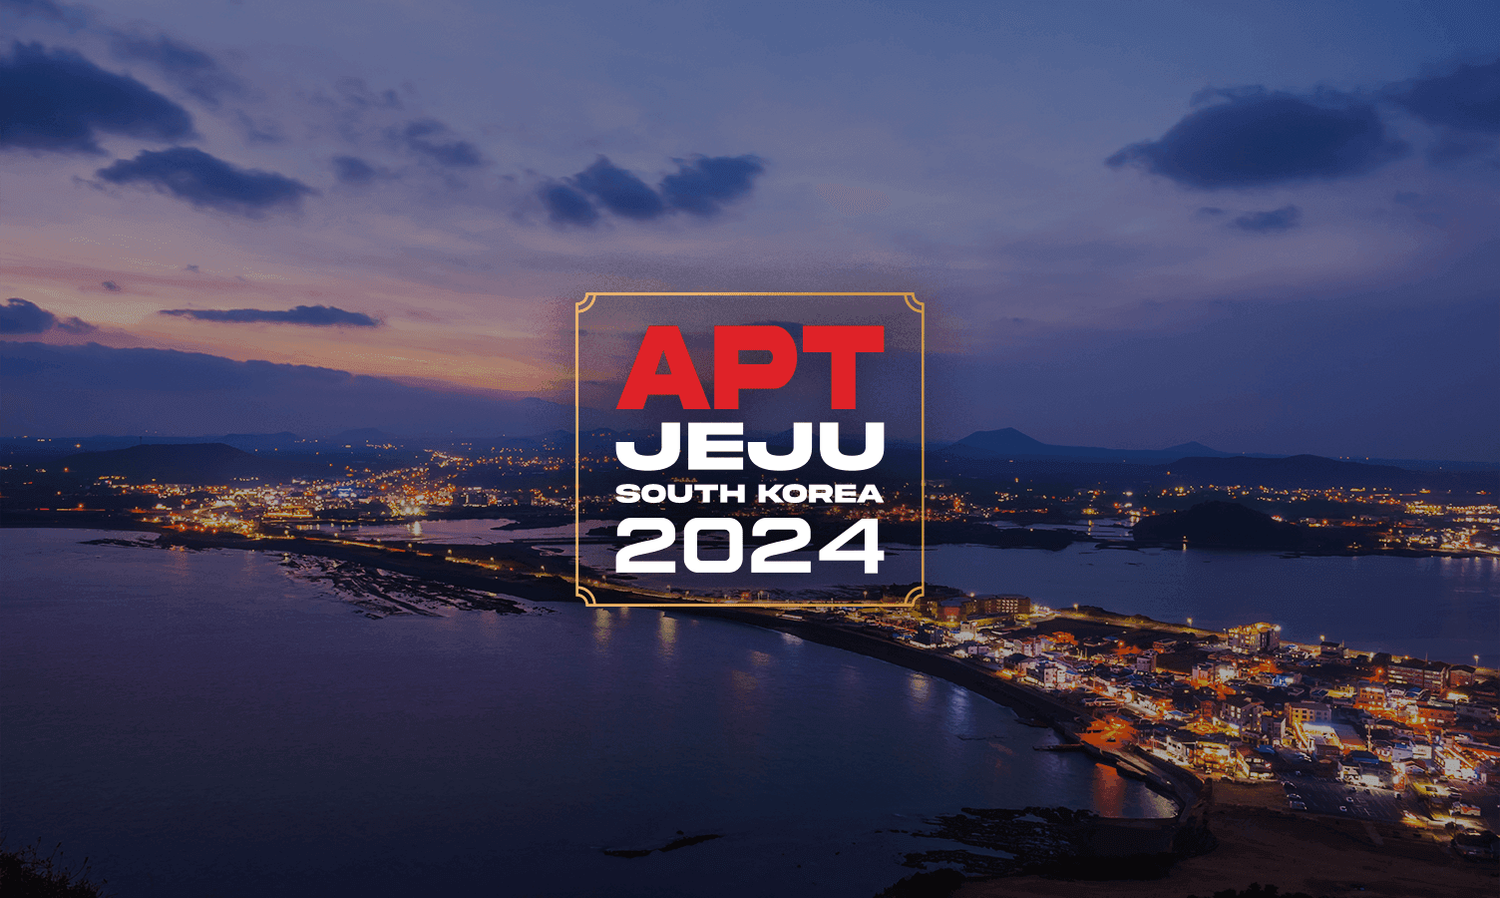 APT Jeju, South Korea 2024